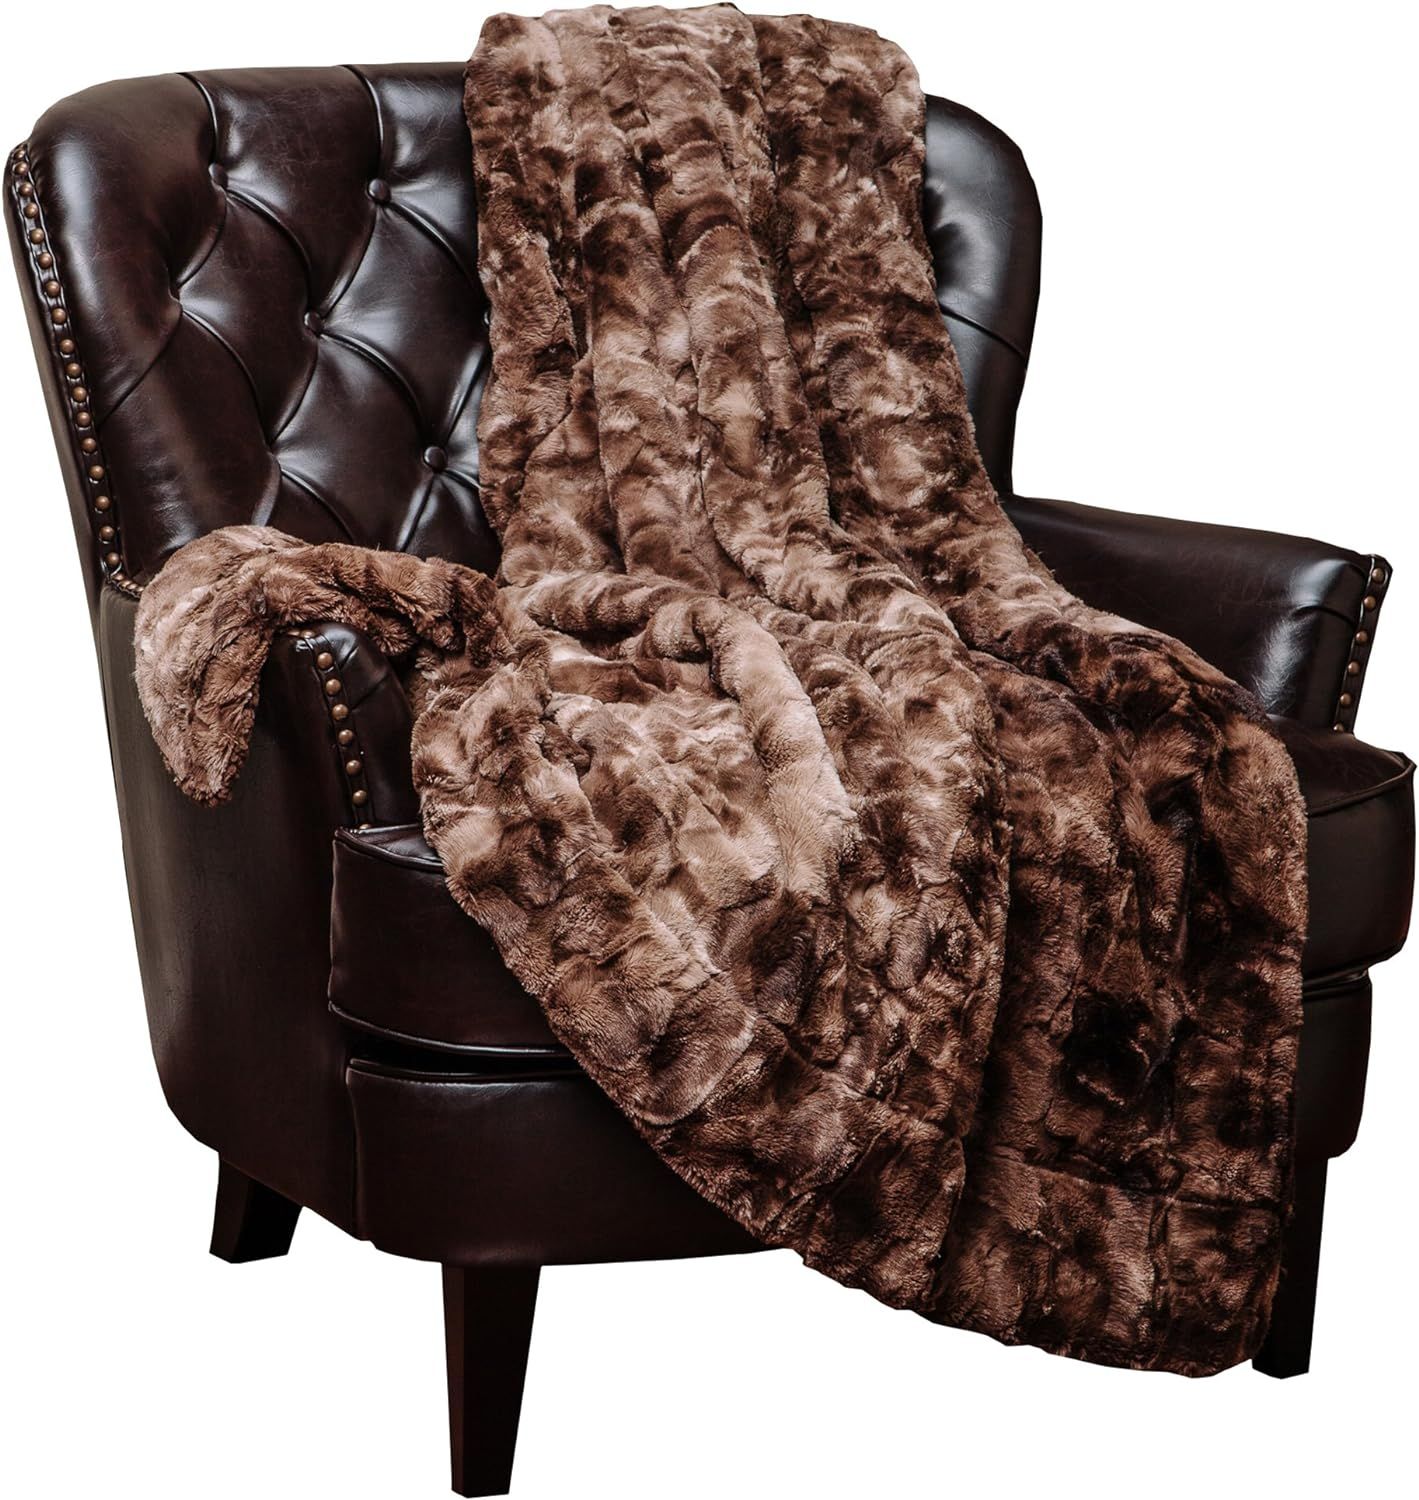 Chanasya Super Soft Fuzzy Faux Fur Throw Blankets - Fluffy Plush Lightweight Cozy Snuggly with Sh... | Amazon (US)